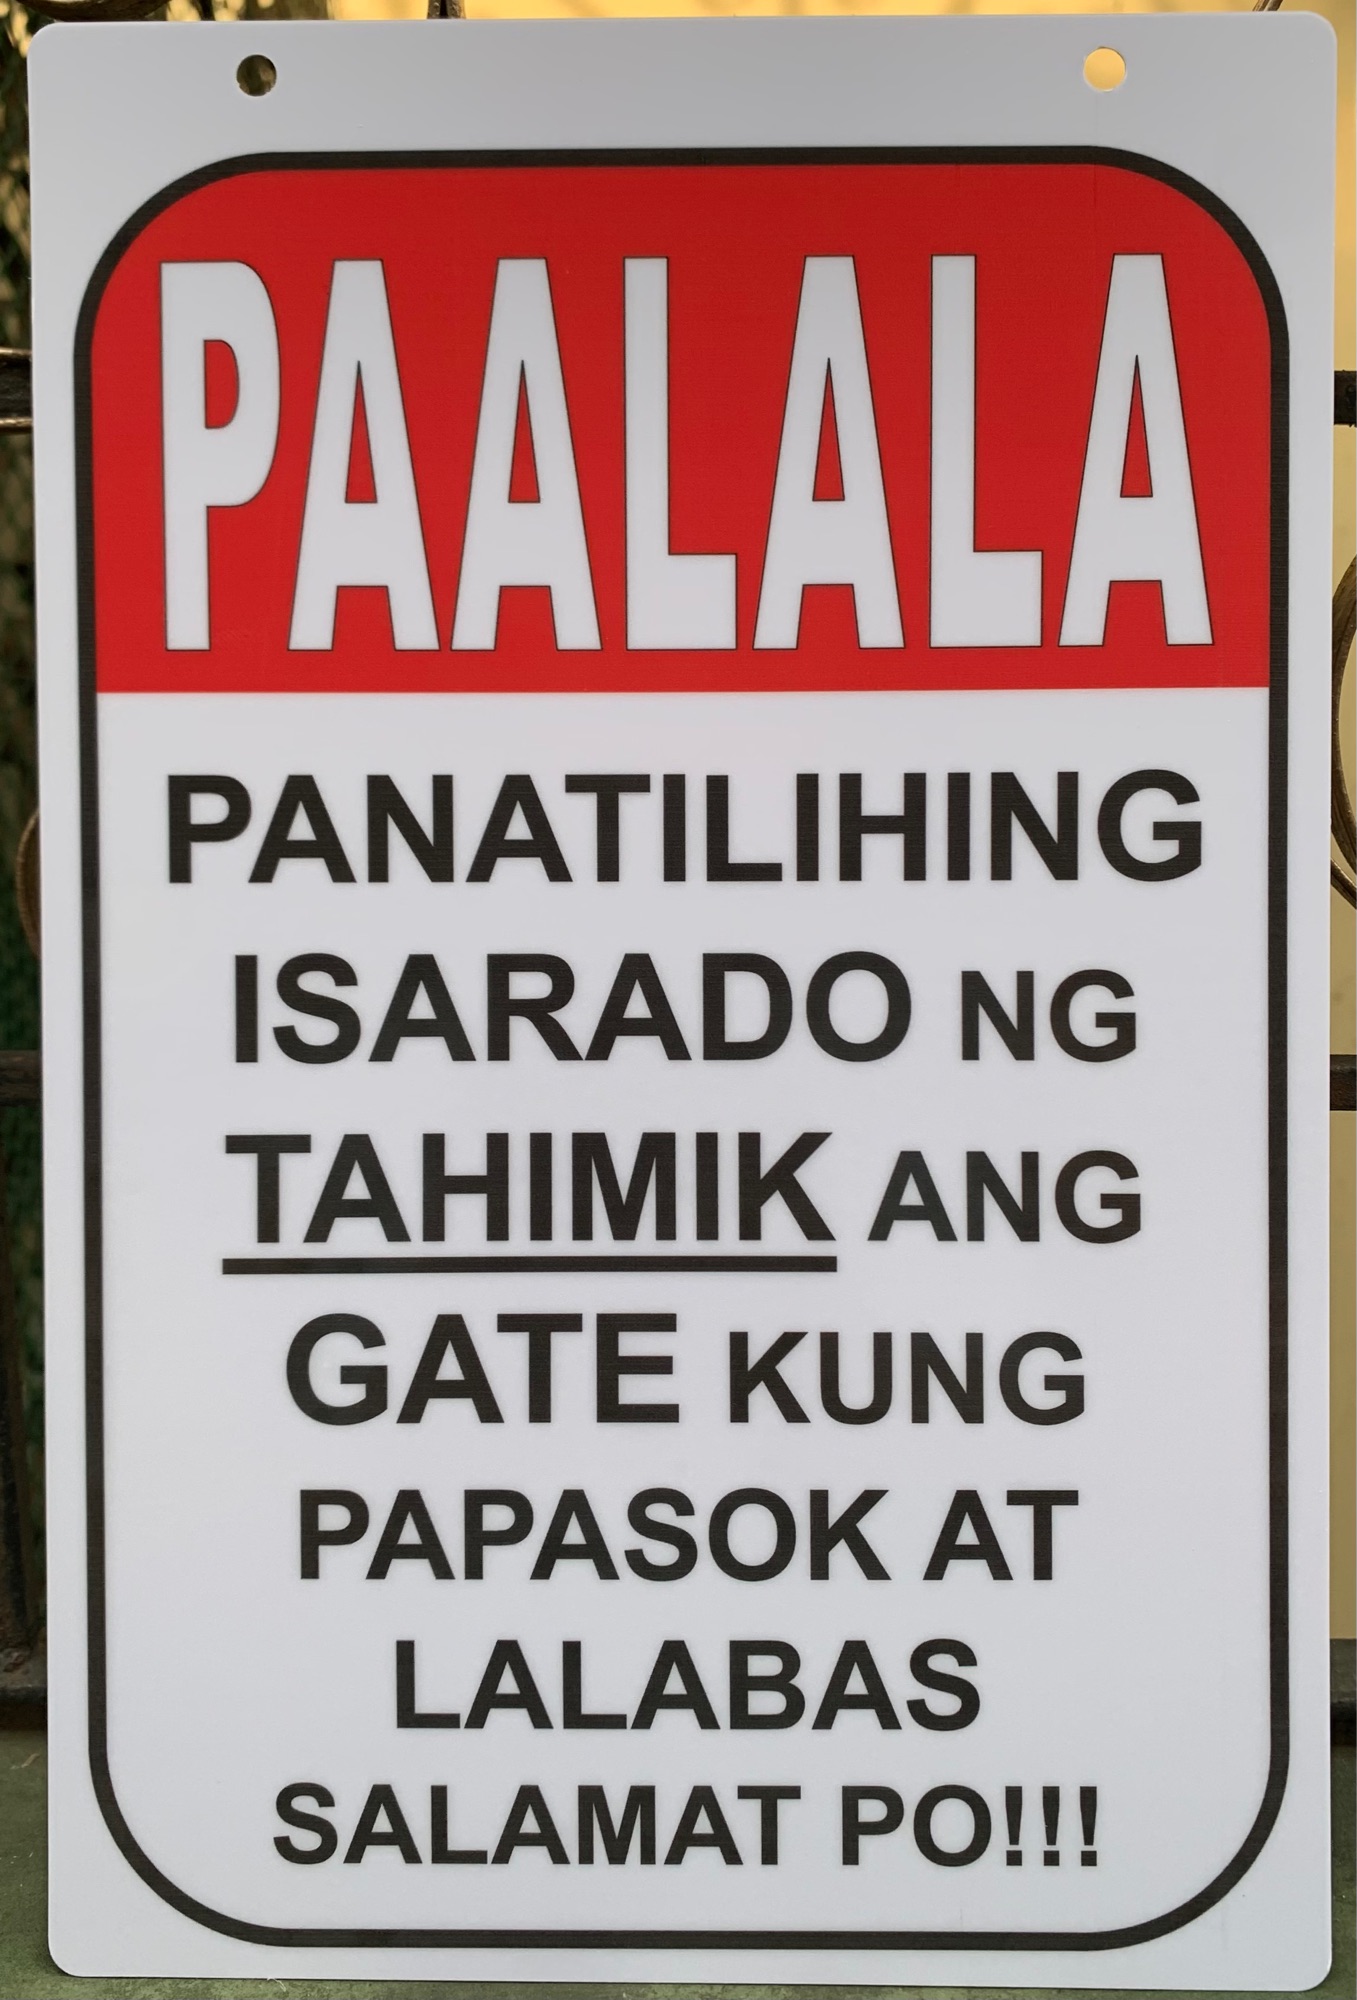 Pvc Signage Paalala Panatiling Isarado Ng Tahimik Ang Gate 78x11 Inches Lazada Ph 3639